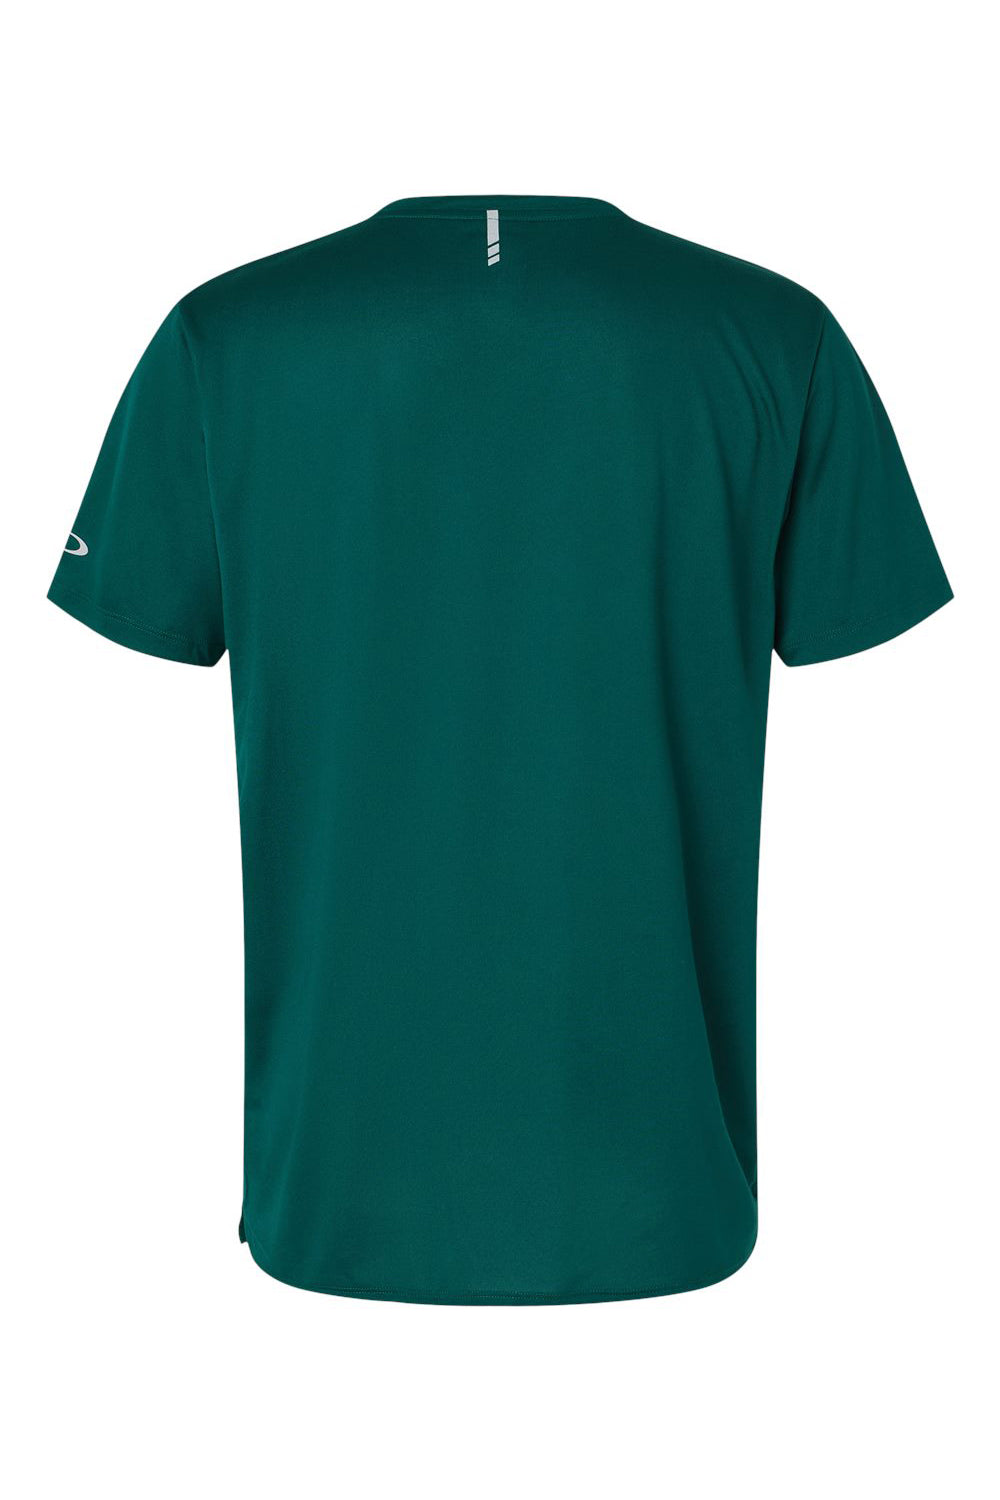 Oakley FOA402991 Mens Team Issue Hydrolix Short Sleeve Crewneck T-Shirt Team Fir Green Flat Back